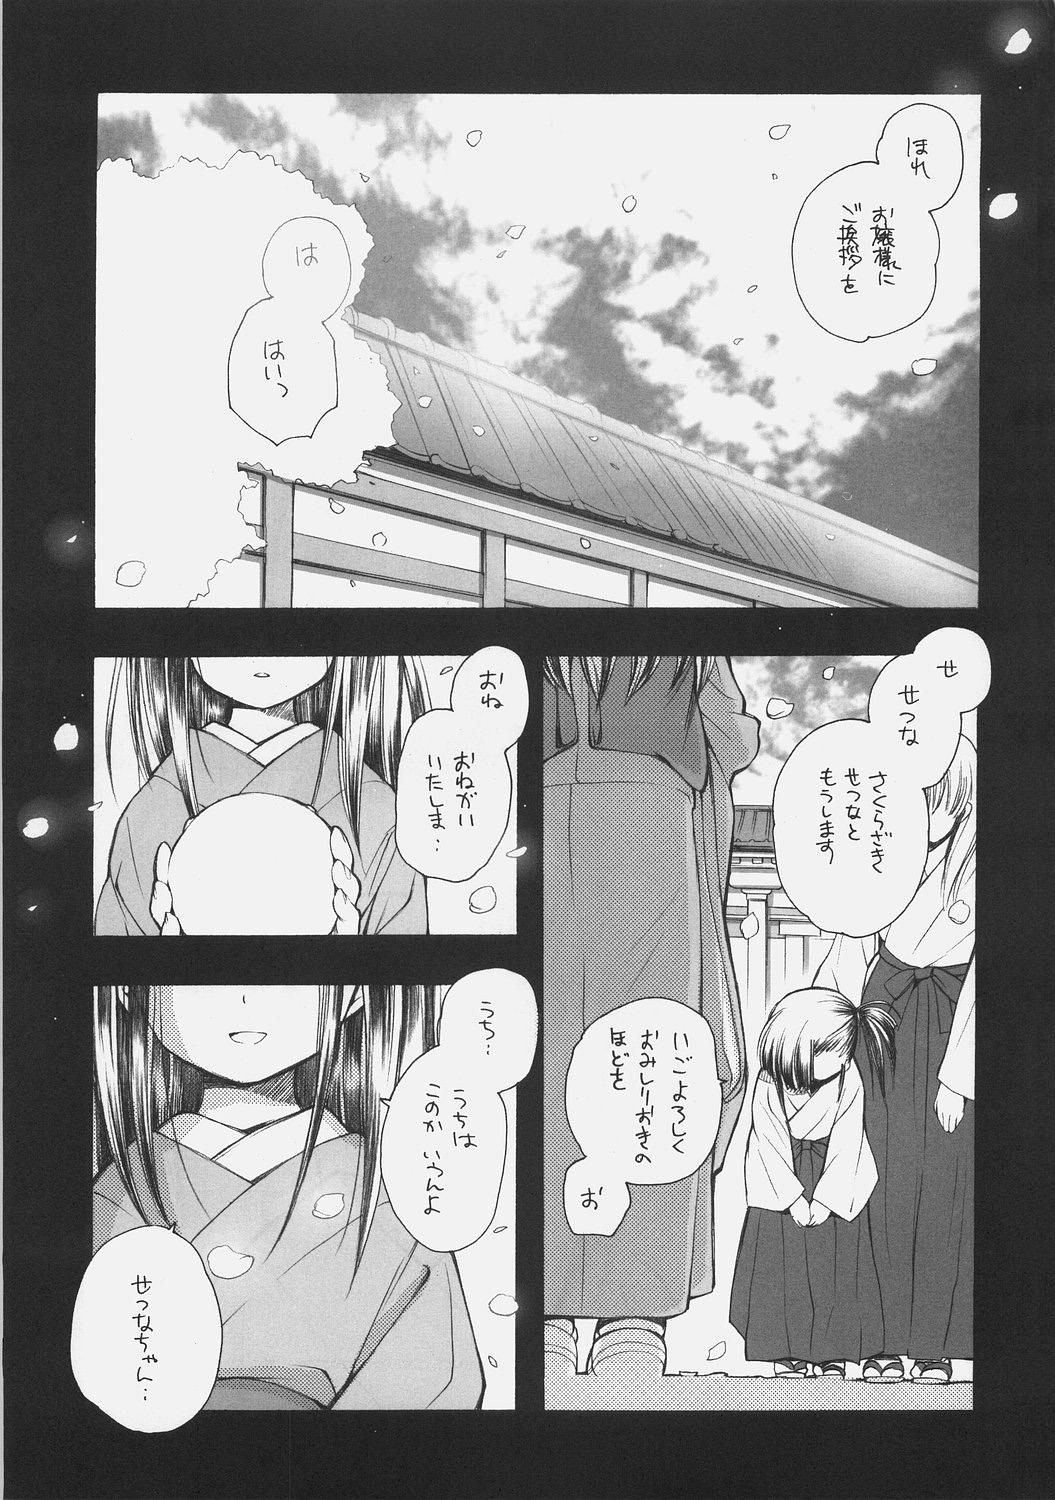 Chaturbate KonoSetsu - Mahou sensei negima Bound - Page 2